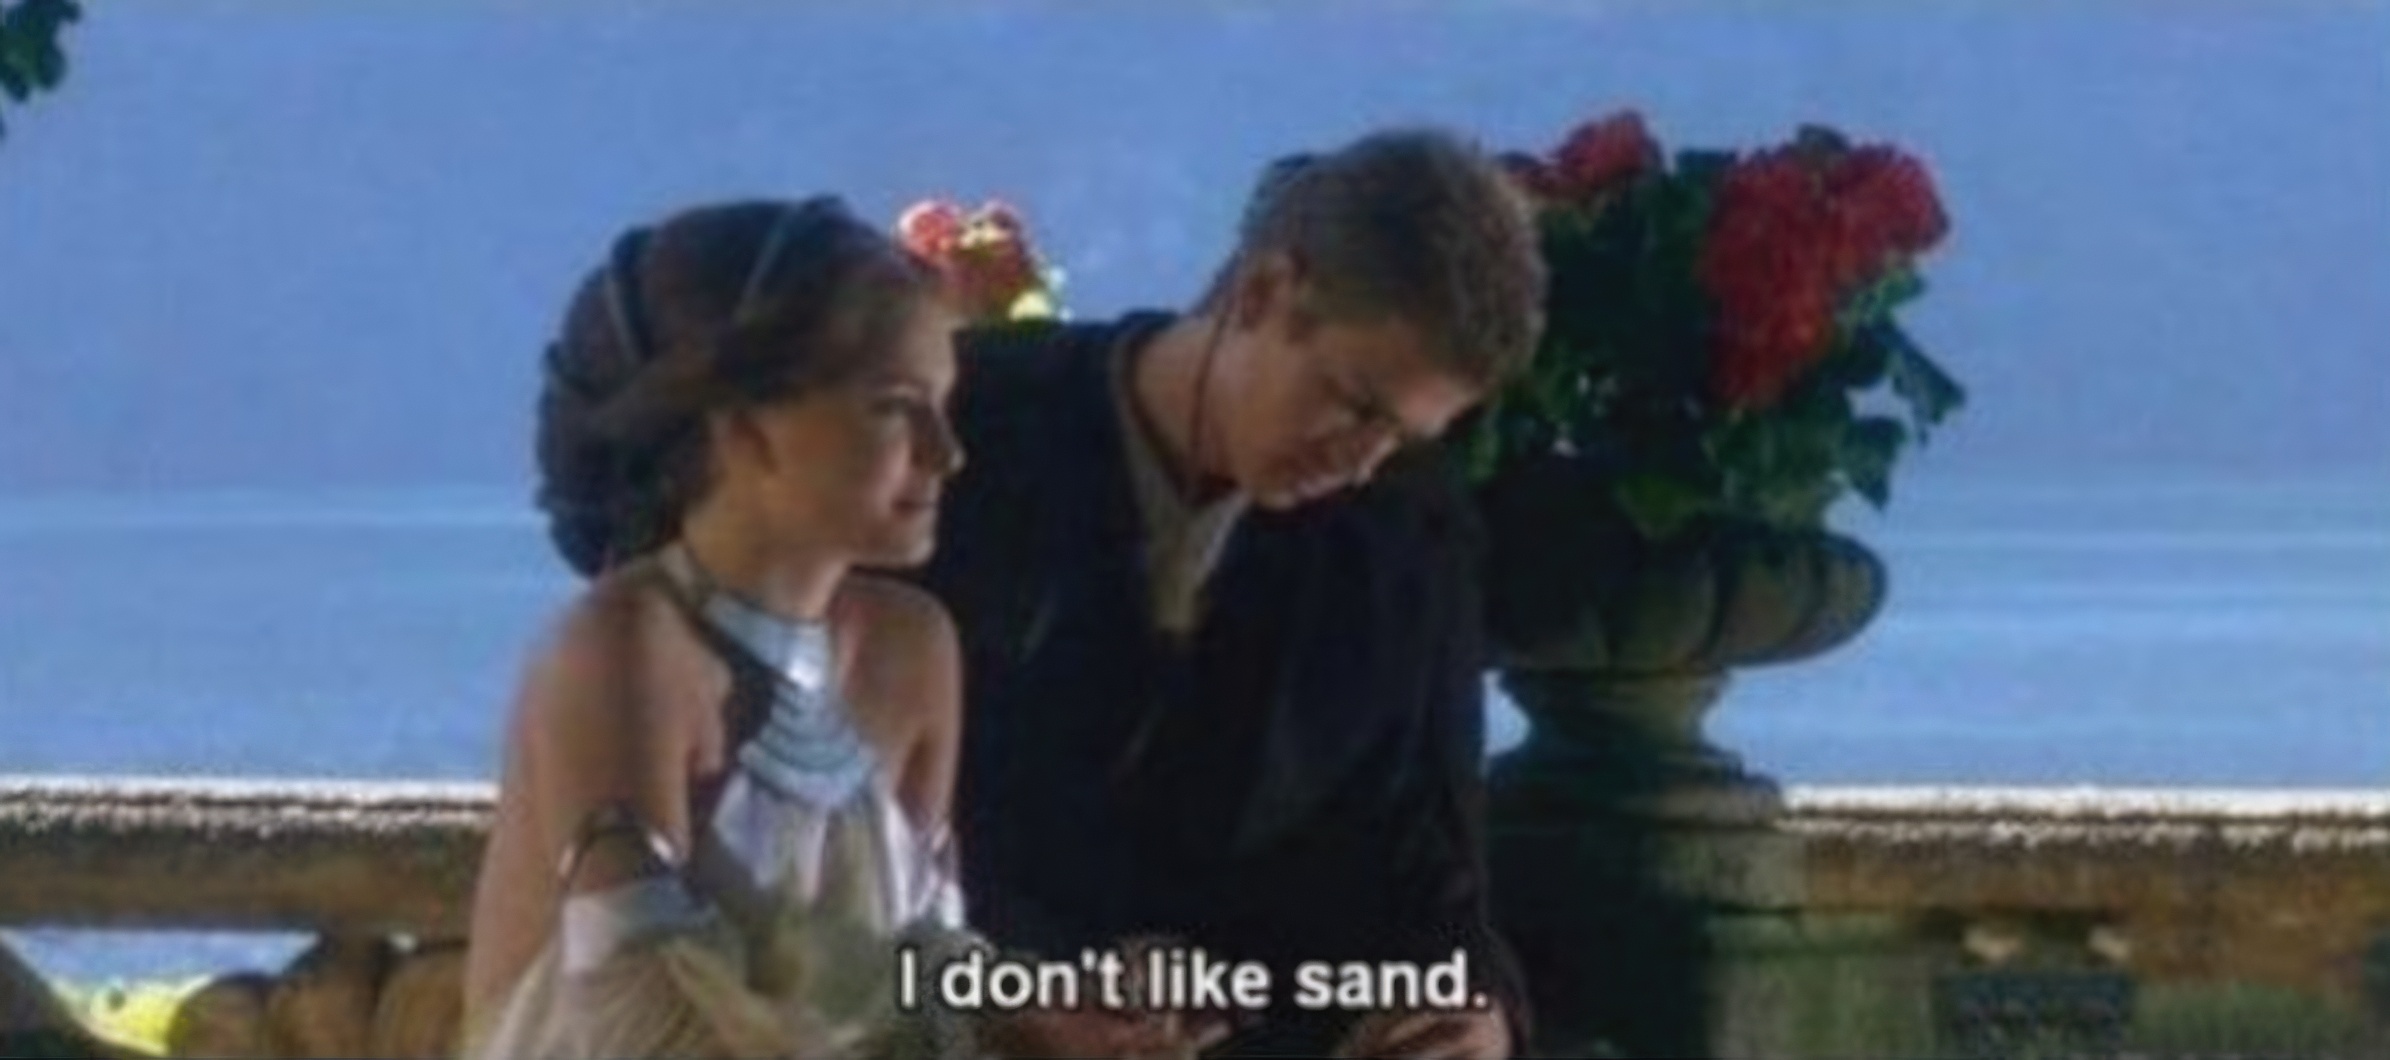 High Quality I don't like sand Blank Meme Template